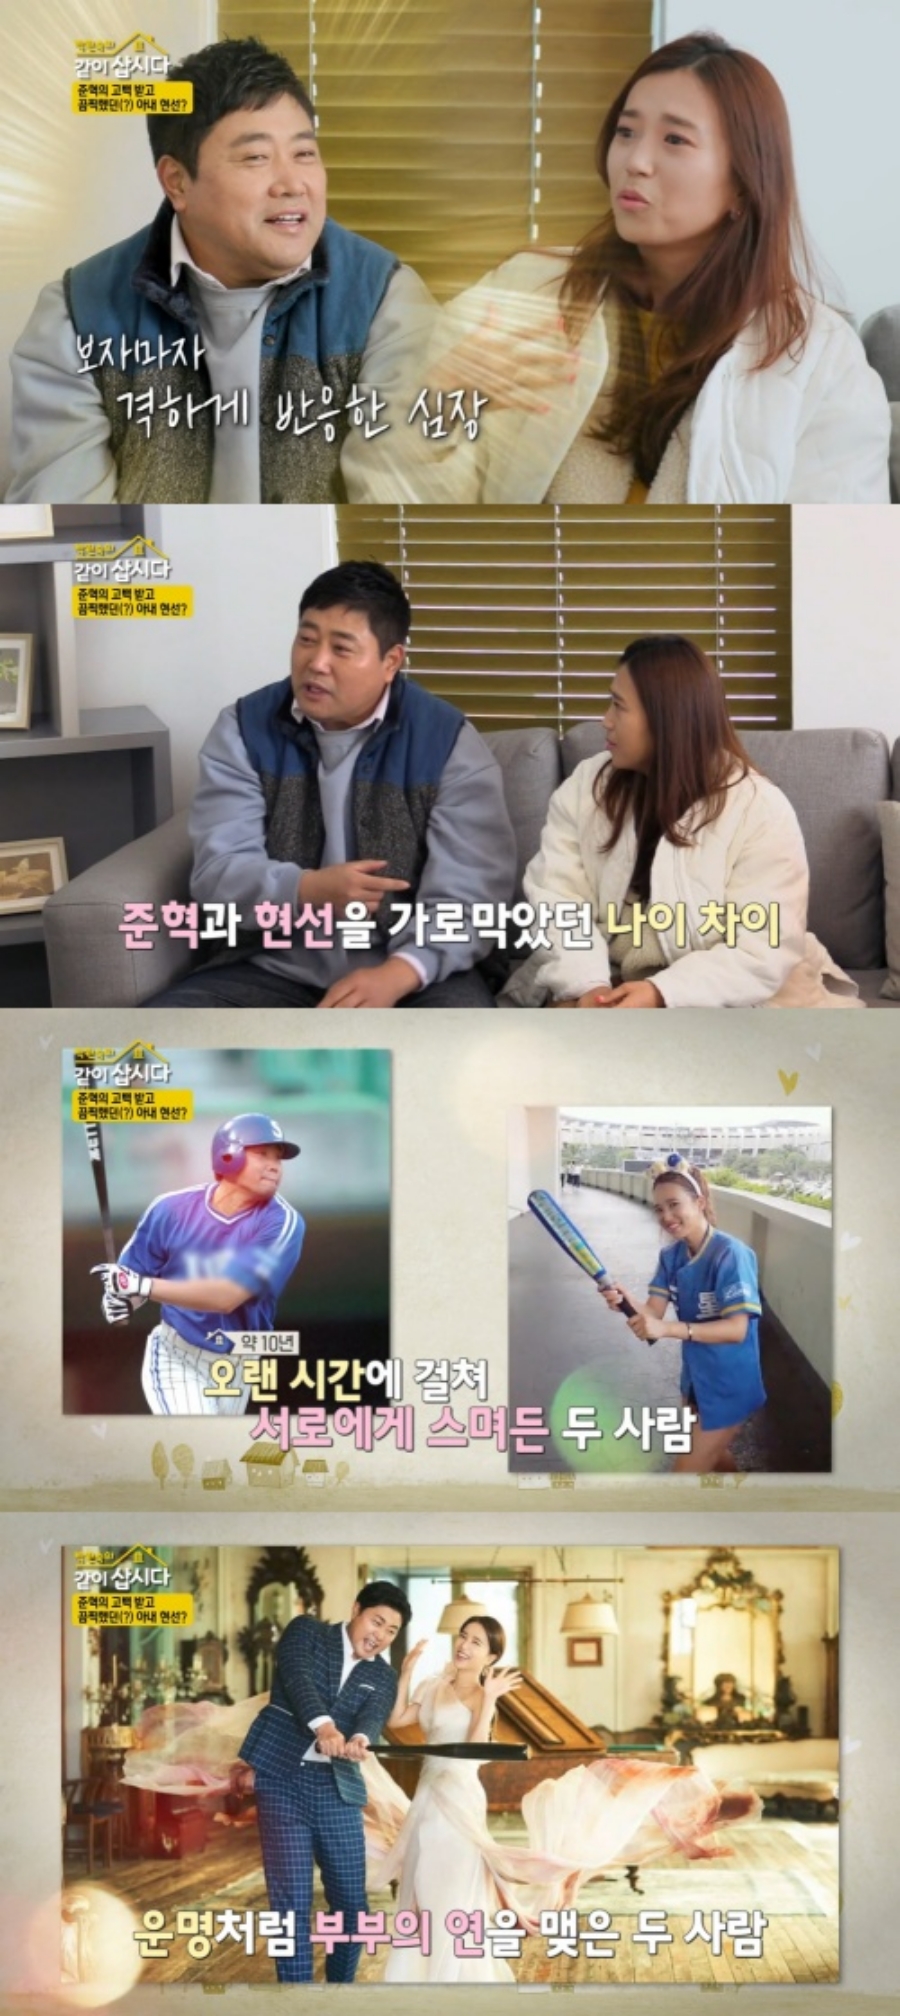 ▲ 출처| KBS2 예능프로그램 '박원숙의 같이 삽시다' 방송화면 캡처